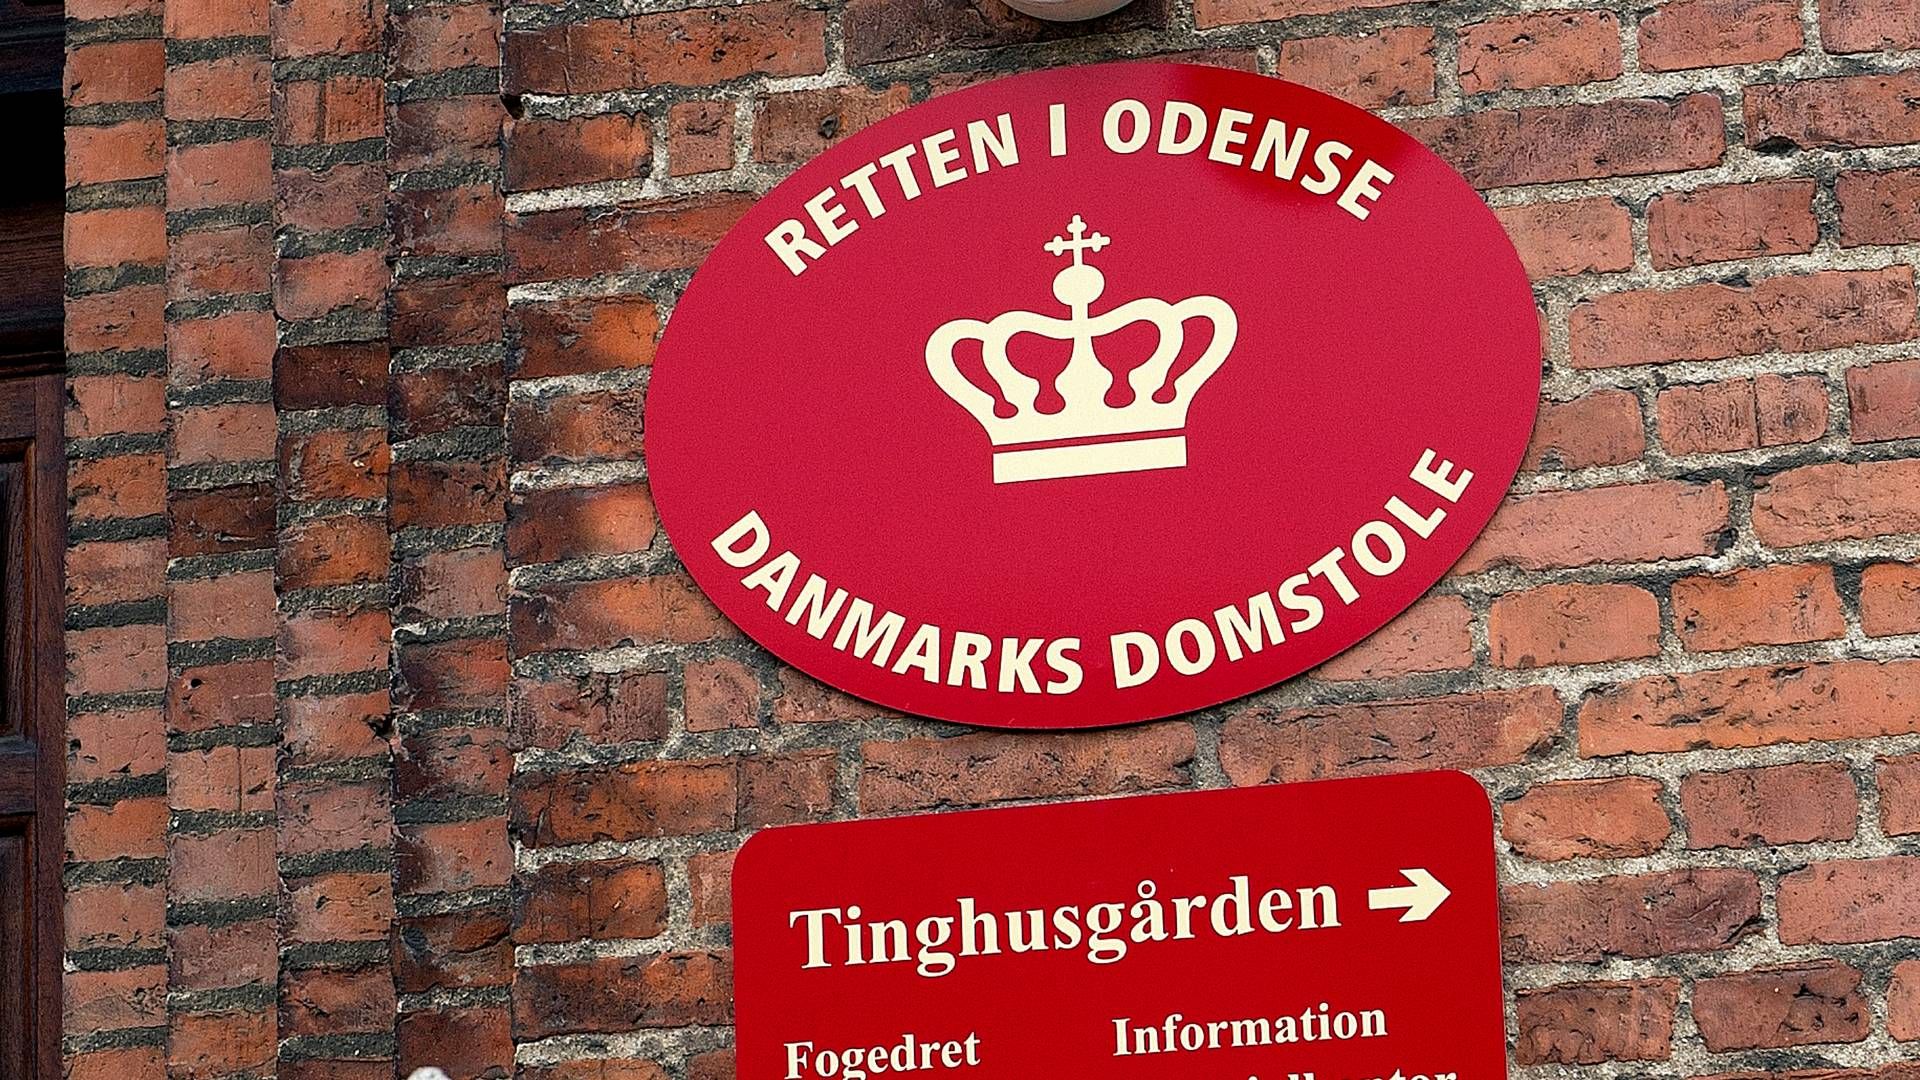 Mandag blev revisor dømt i Retten i Odense. | Foto: Carsten Andreasen